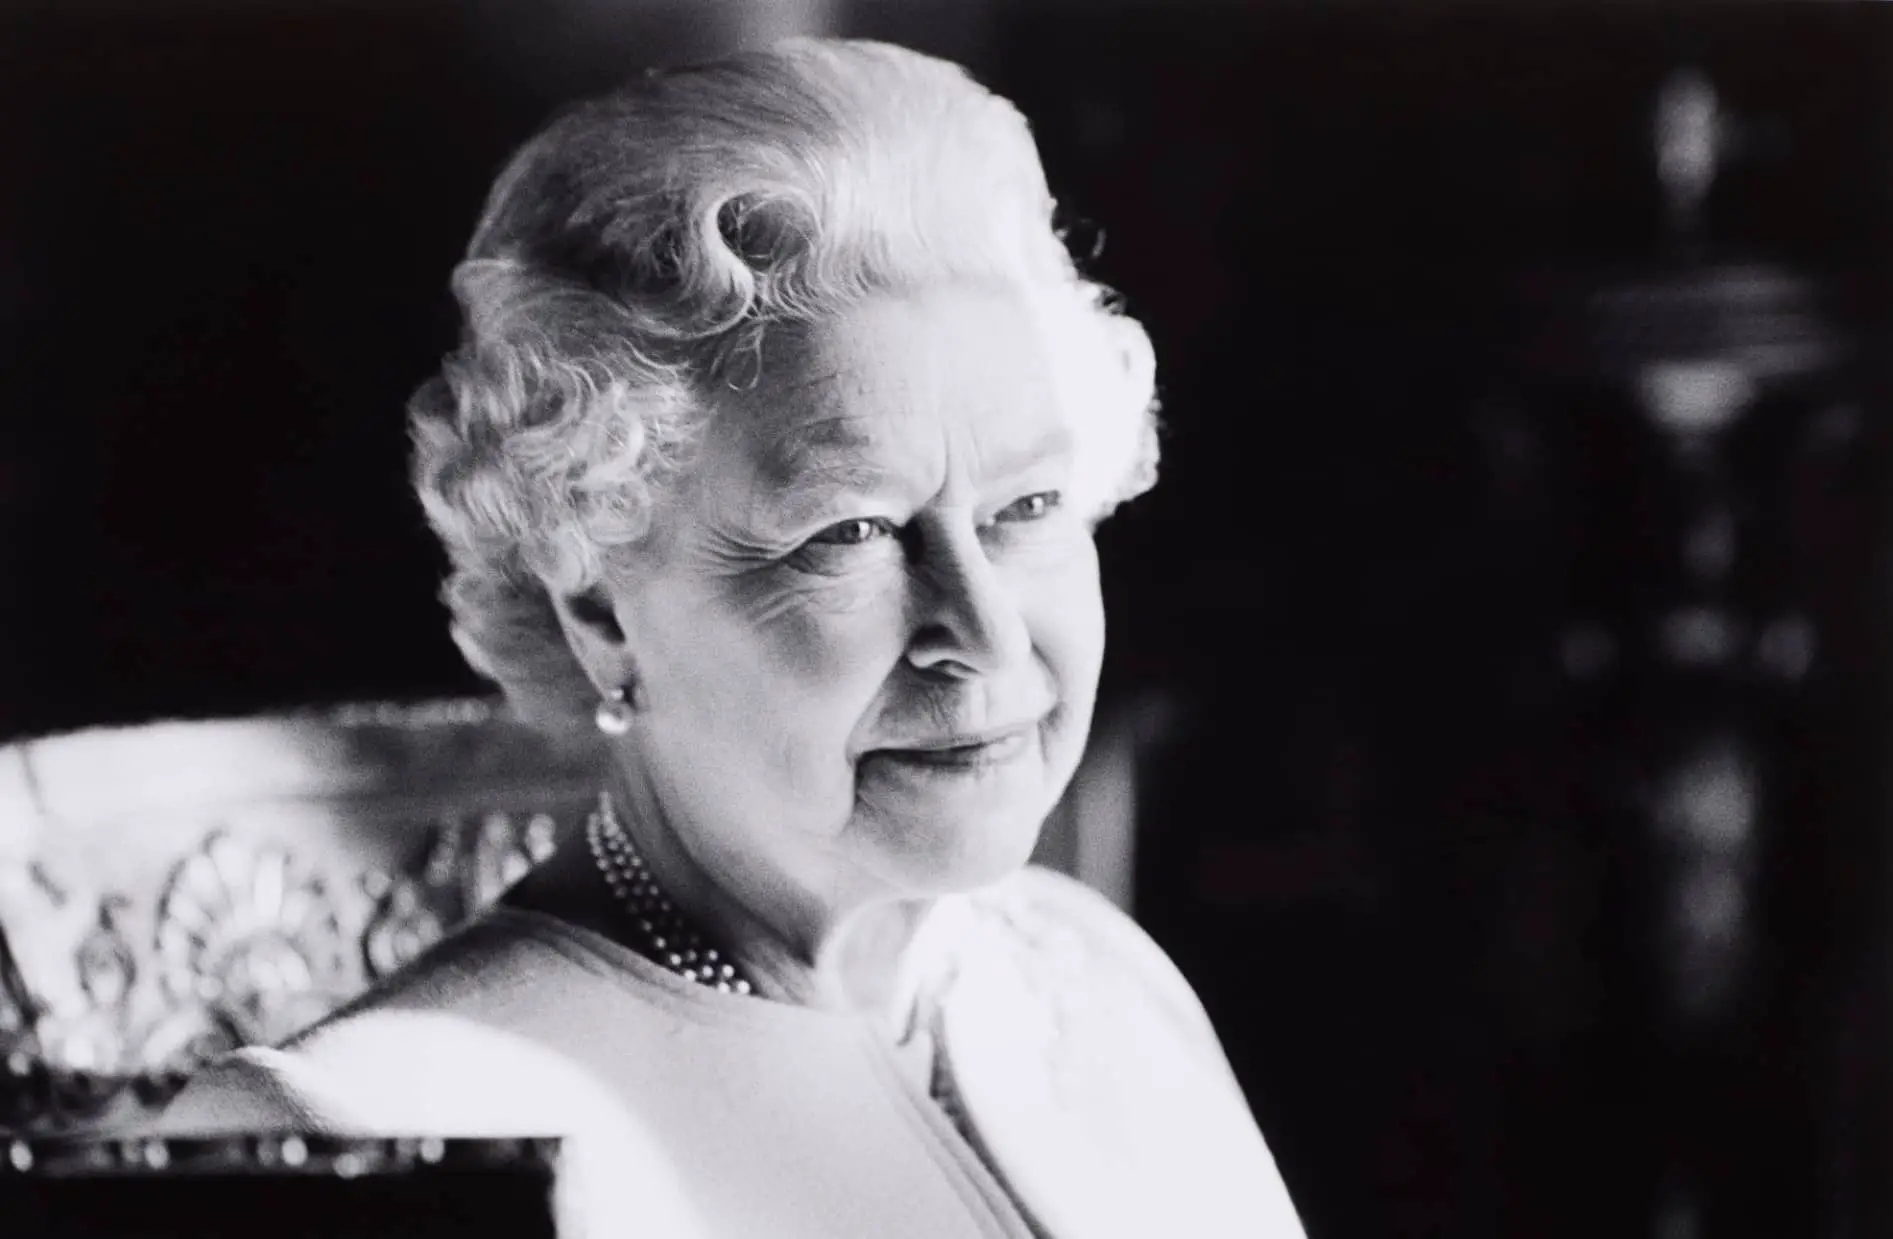 Portrait photo of Queen Elizabeth II